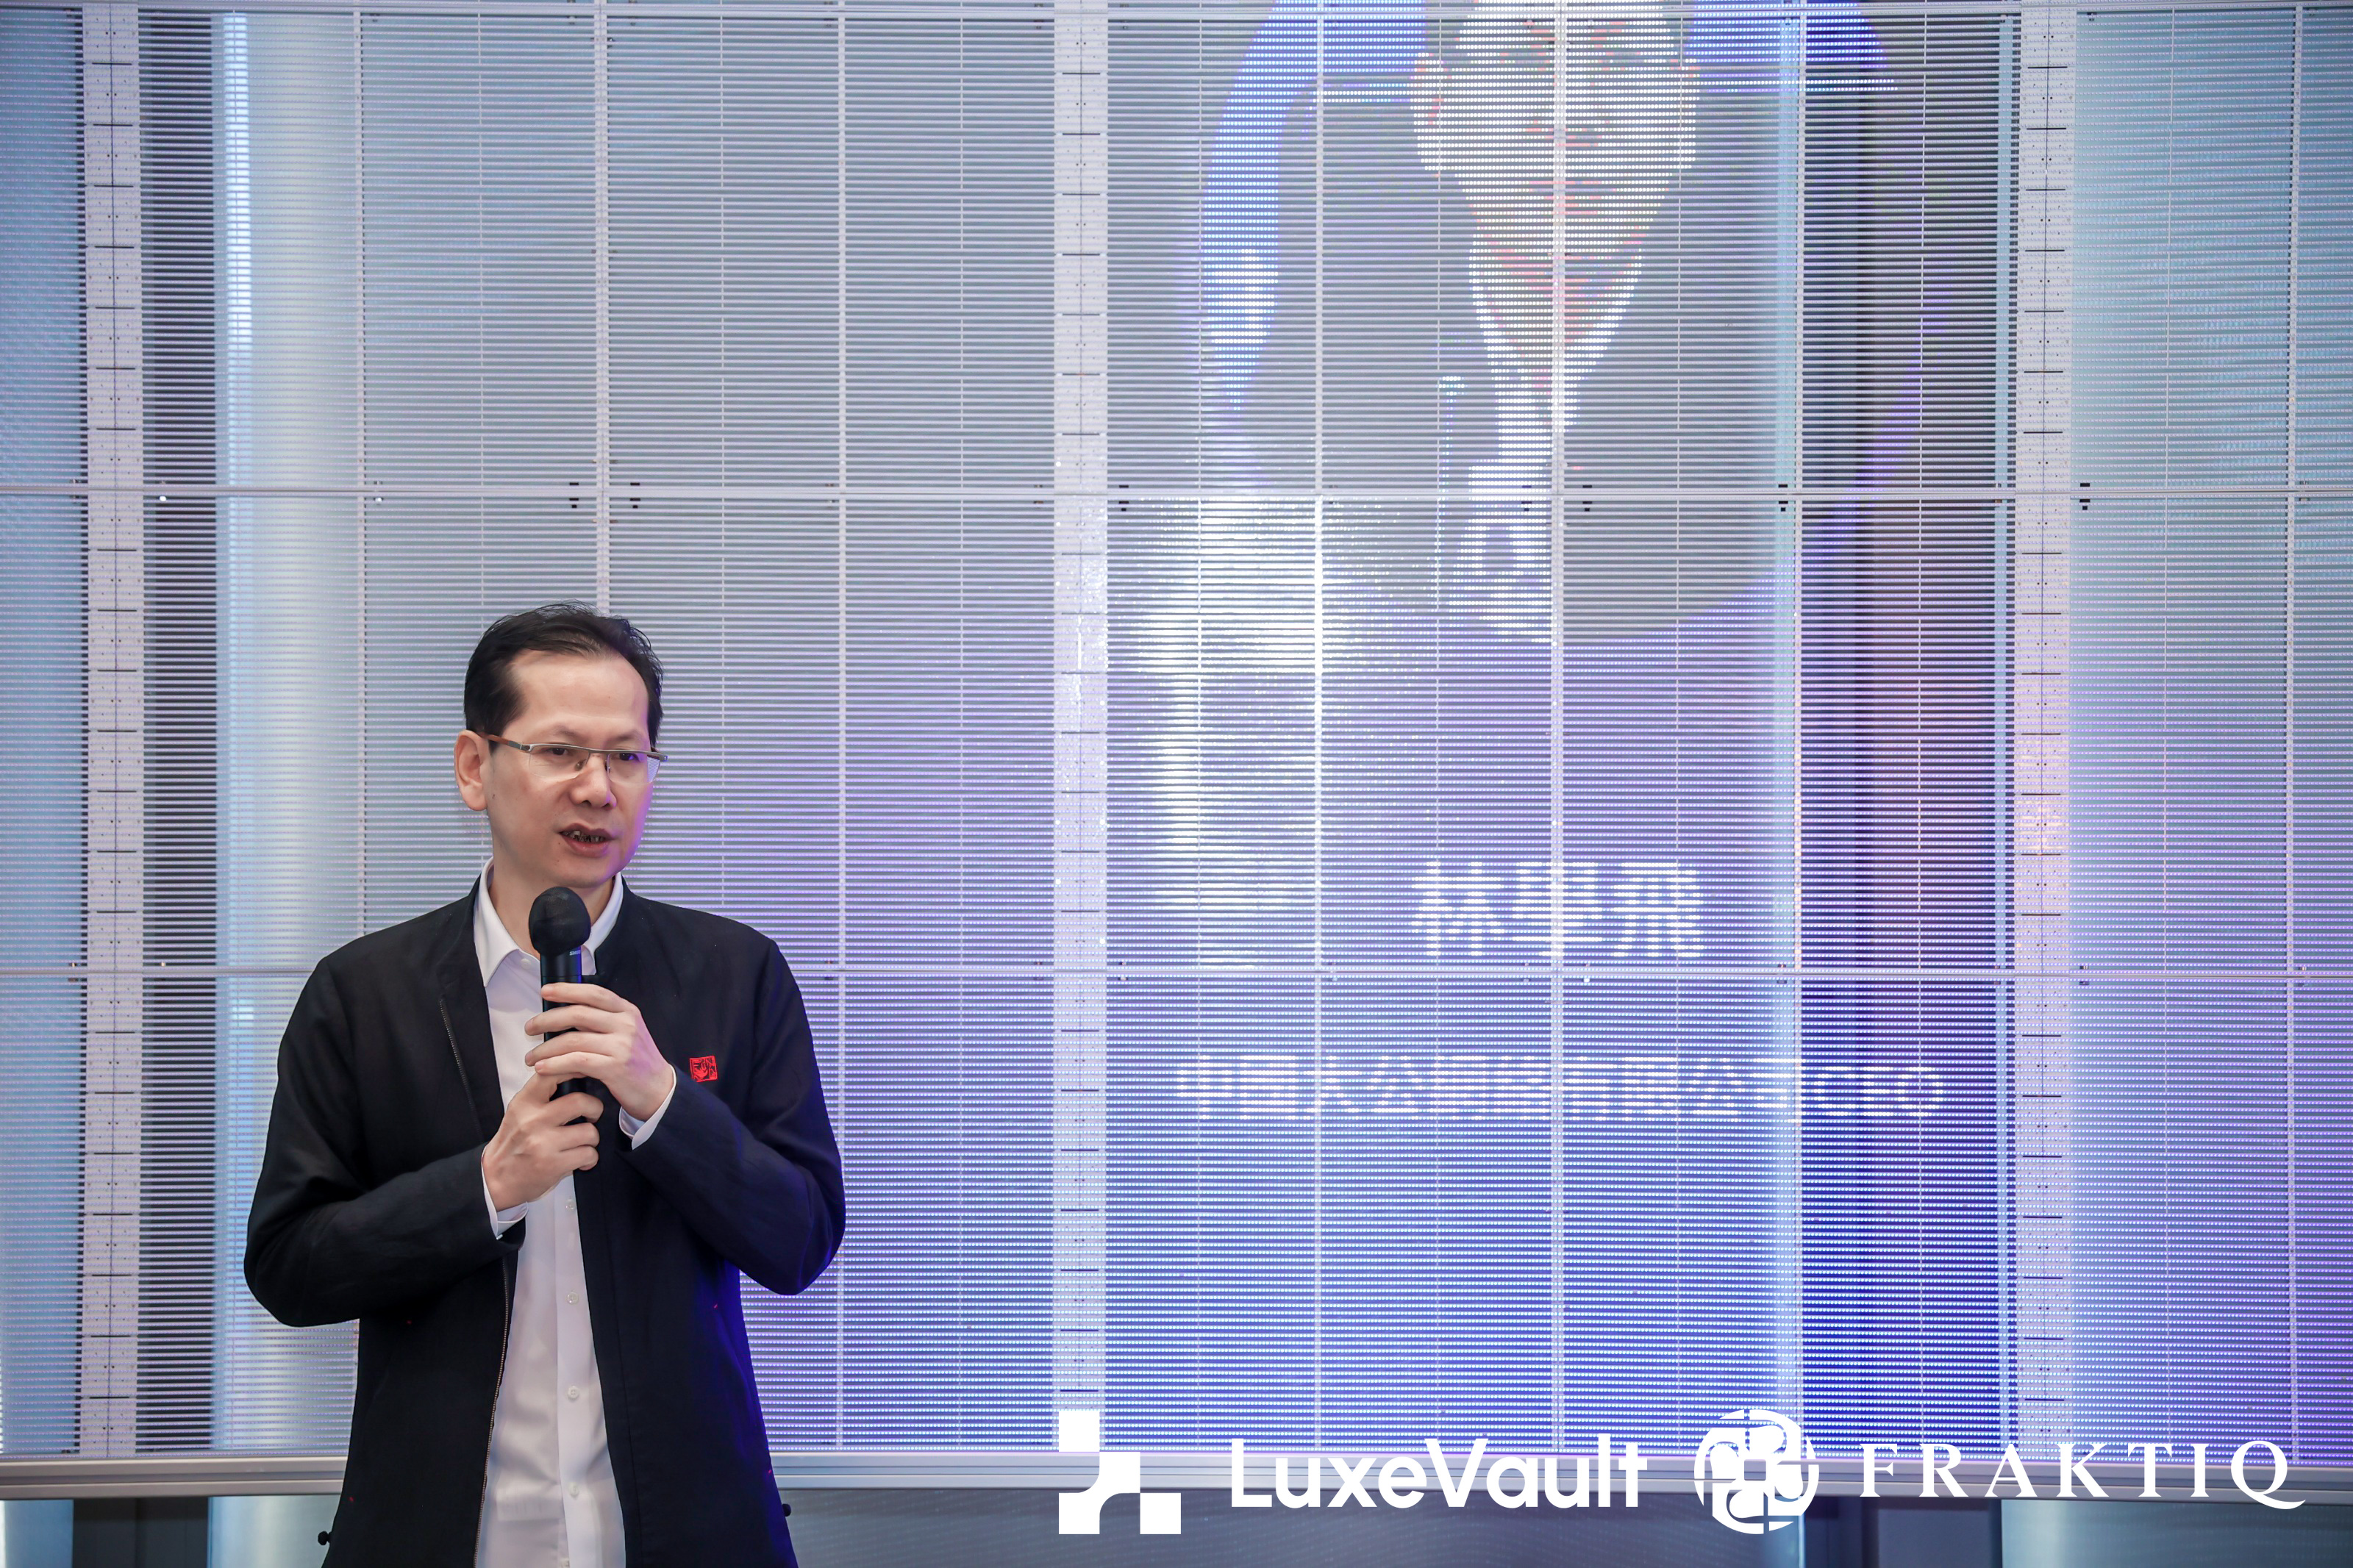 「探索Web3 & RWA未來發展與LuxeVault品牌發表會」在香港成功舉行，開啟全球數字化的探索與發展